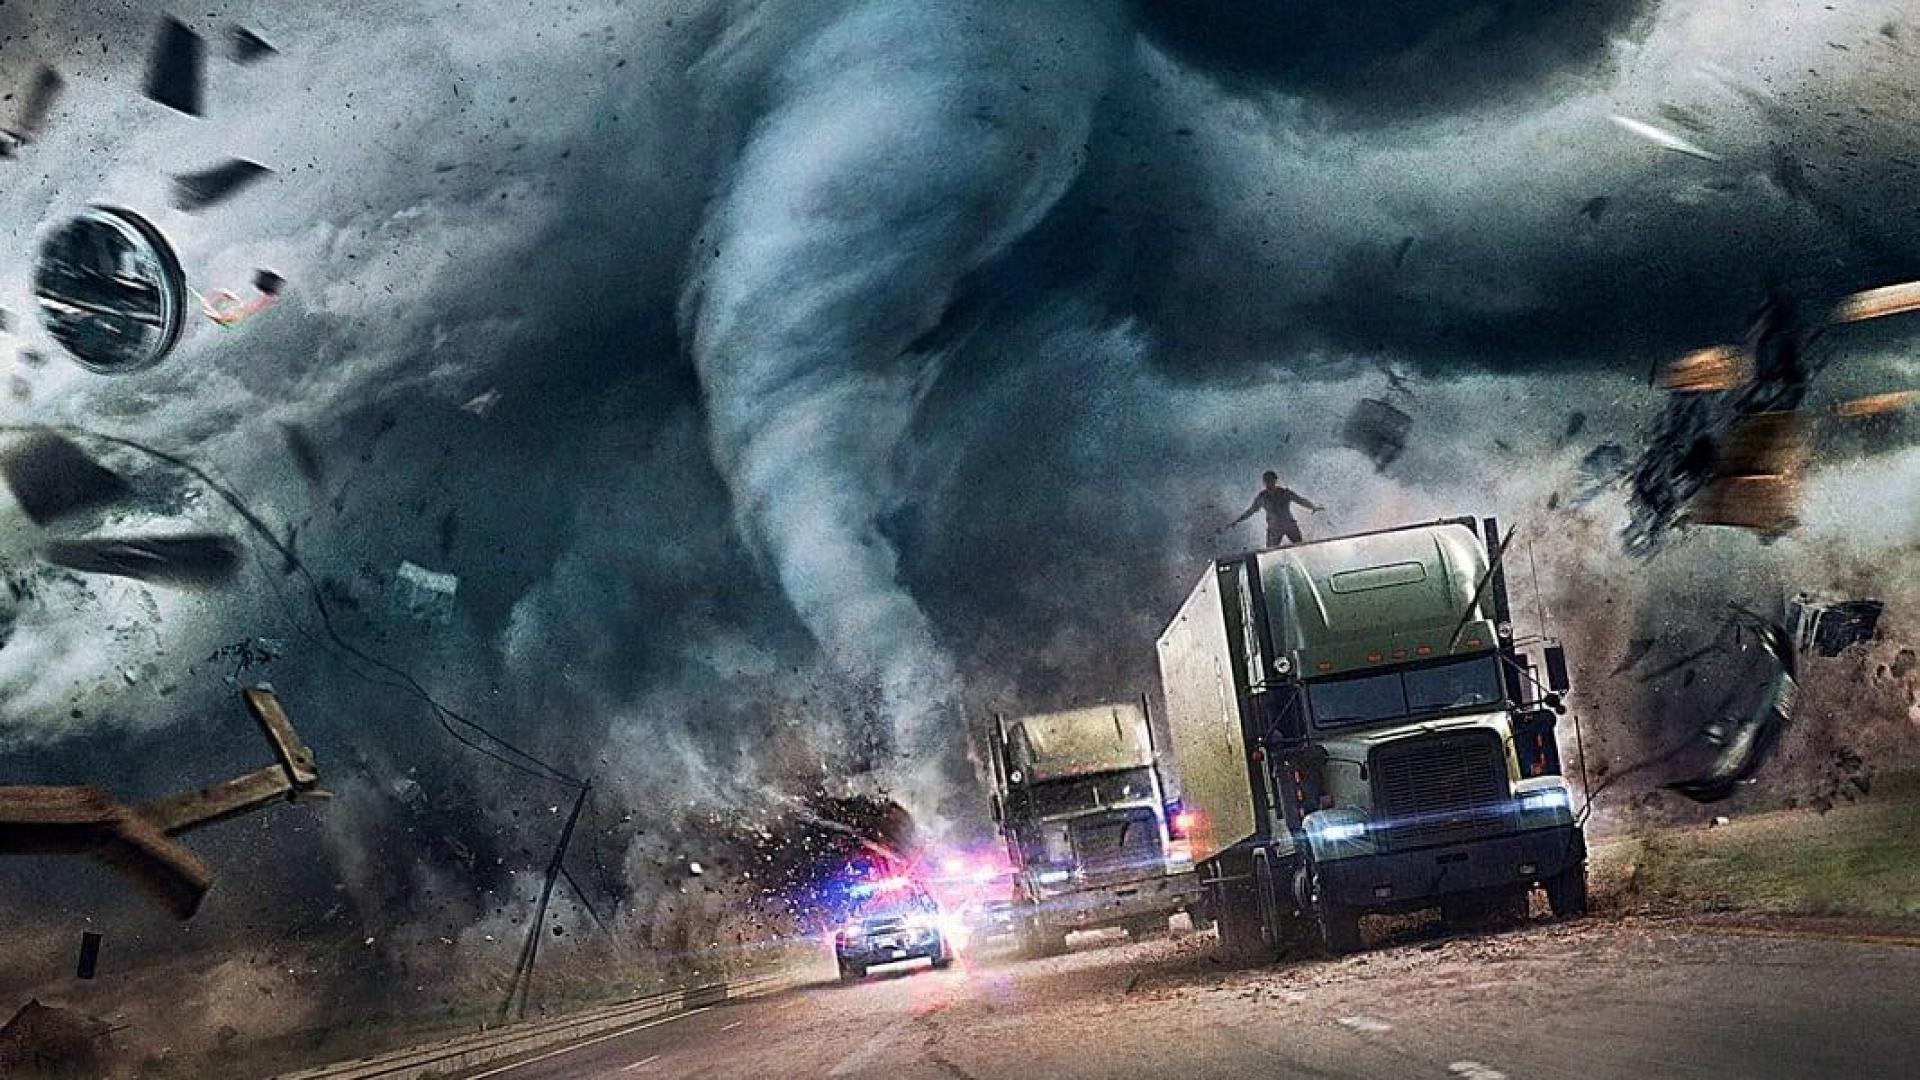 فیلم  The Hurricane Heist 2018 بدون سانسور